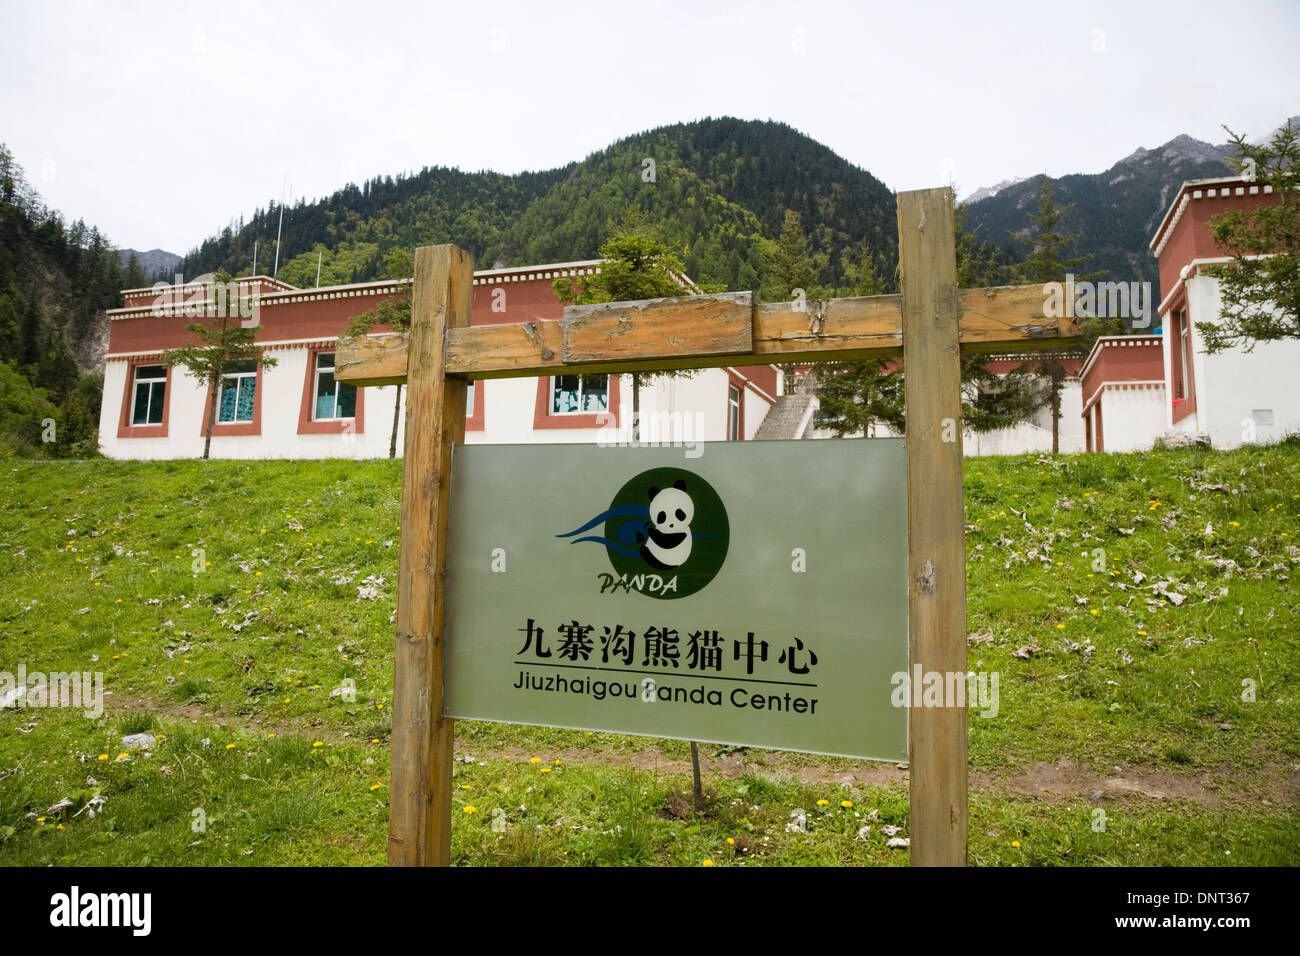 La Panda Jiuzhaigou centro nella valle di Jiuzhaigou natura cinese park, Sichuan, in Cina. Il centro svolge attività di ricerca sulla conservazione dei panda. (67) Foto Stock